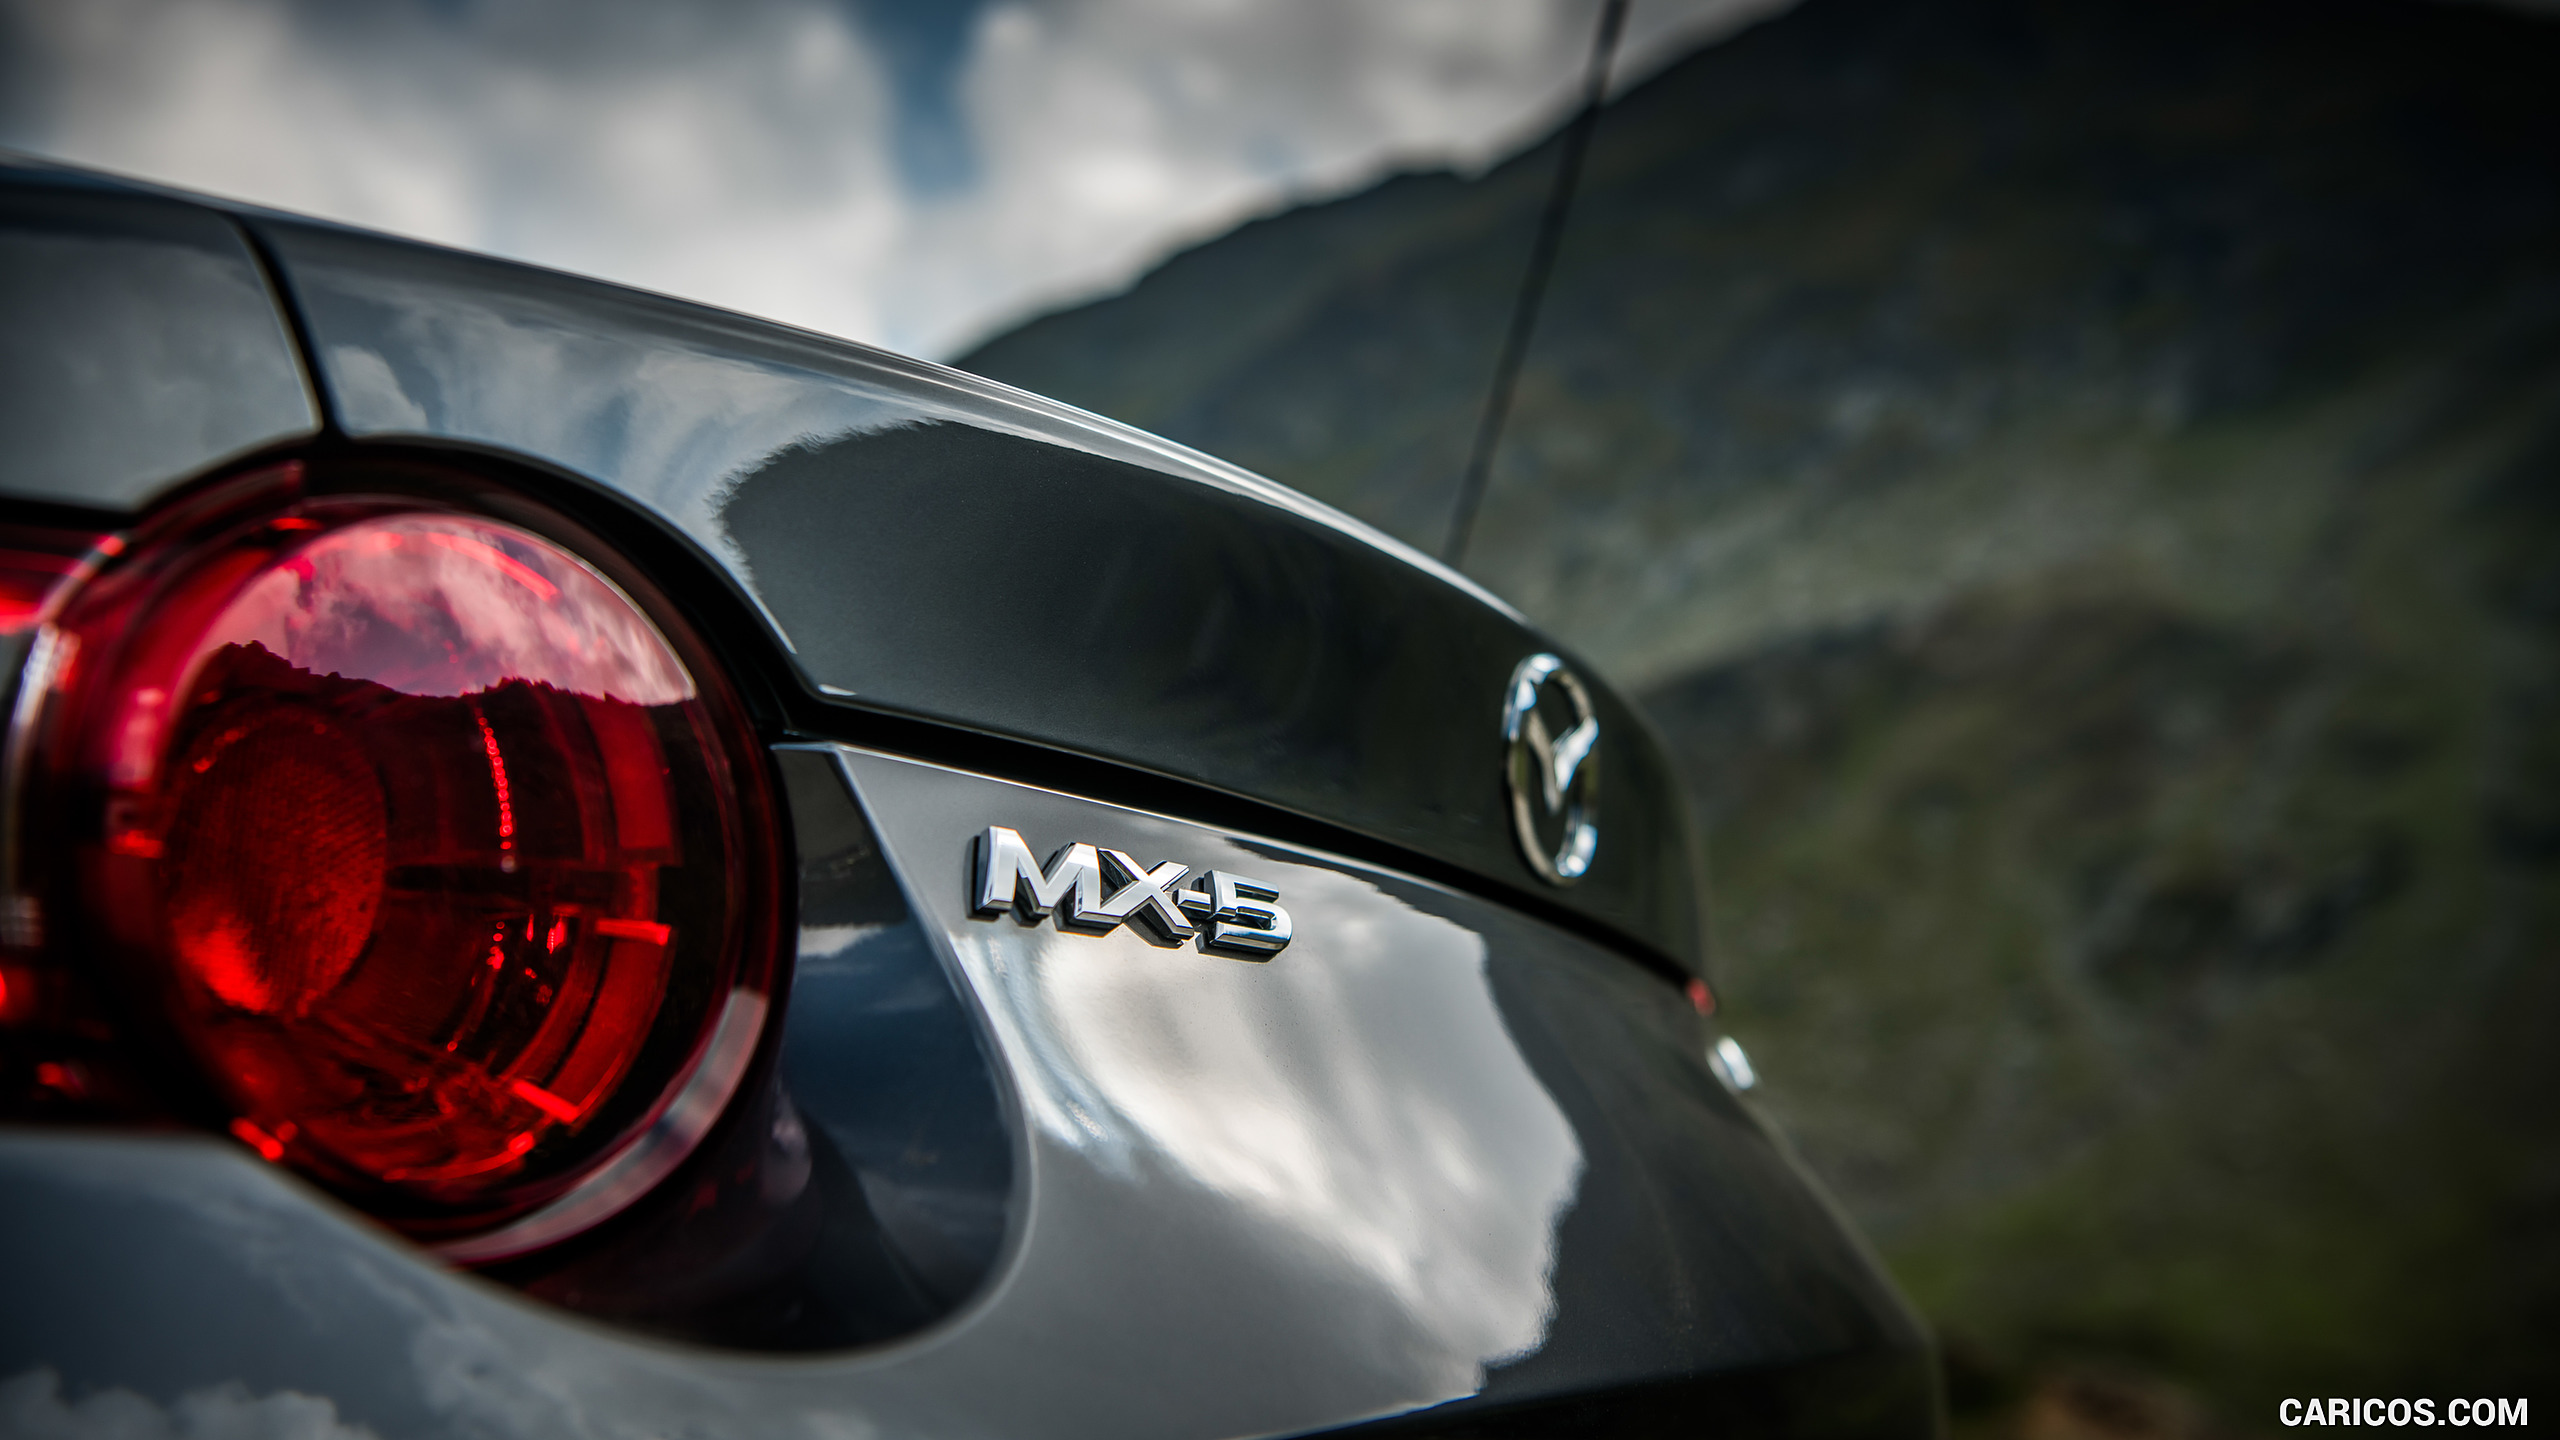 2019 Mazda MX-5 Roadster - Tail Light, #56 of 101